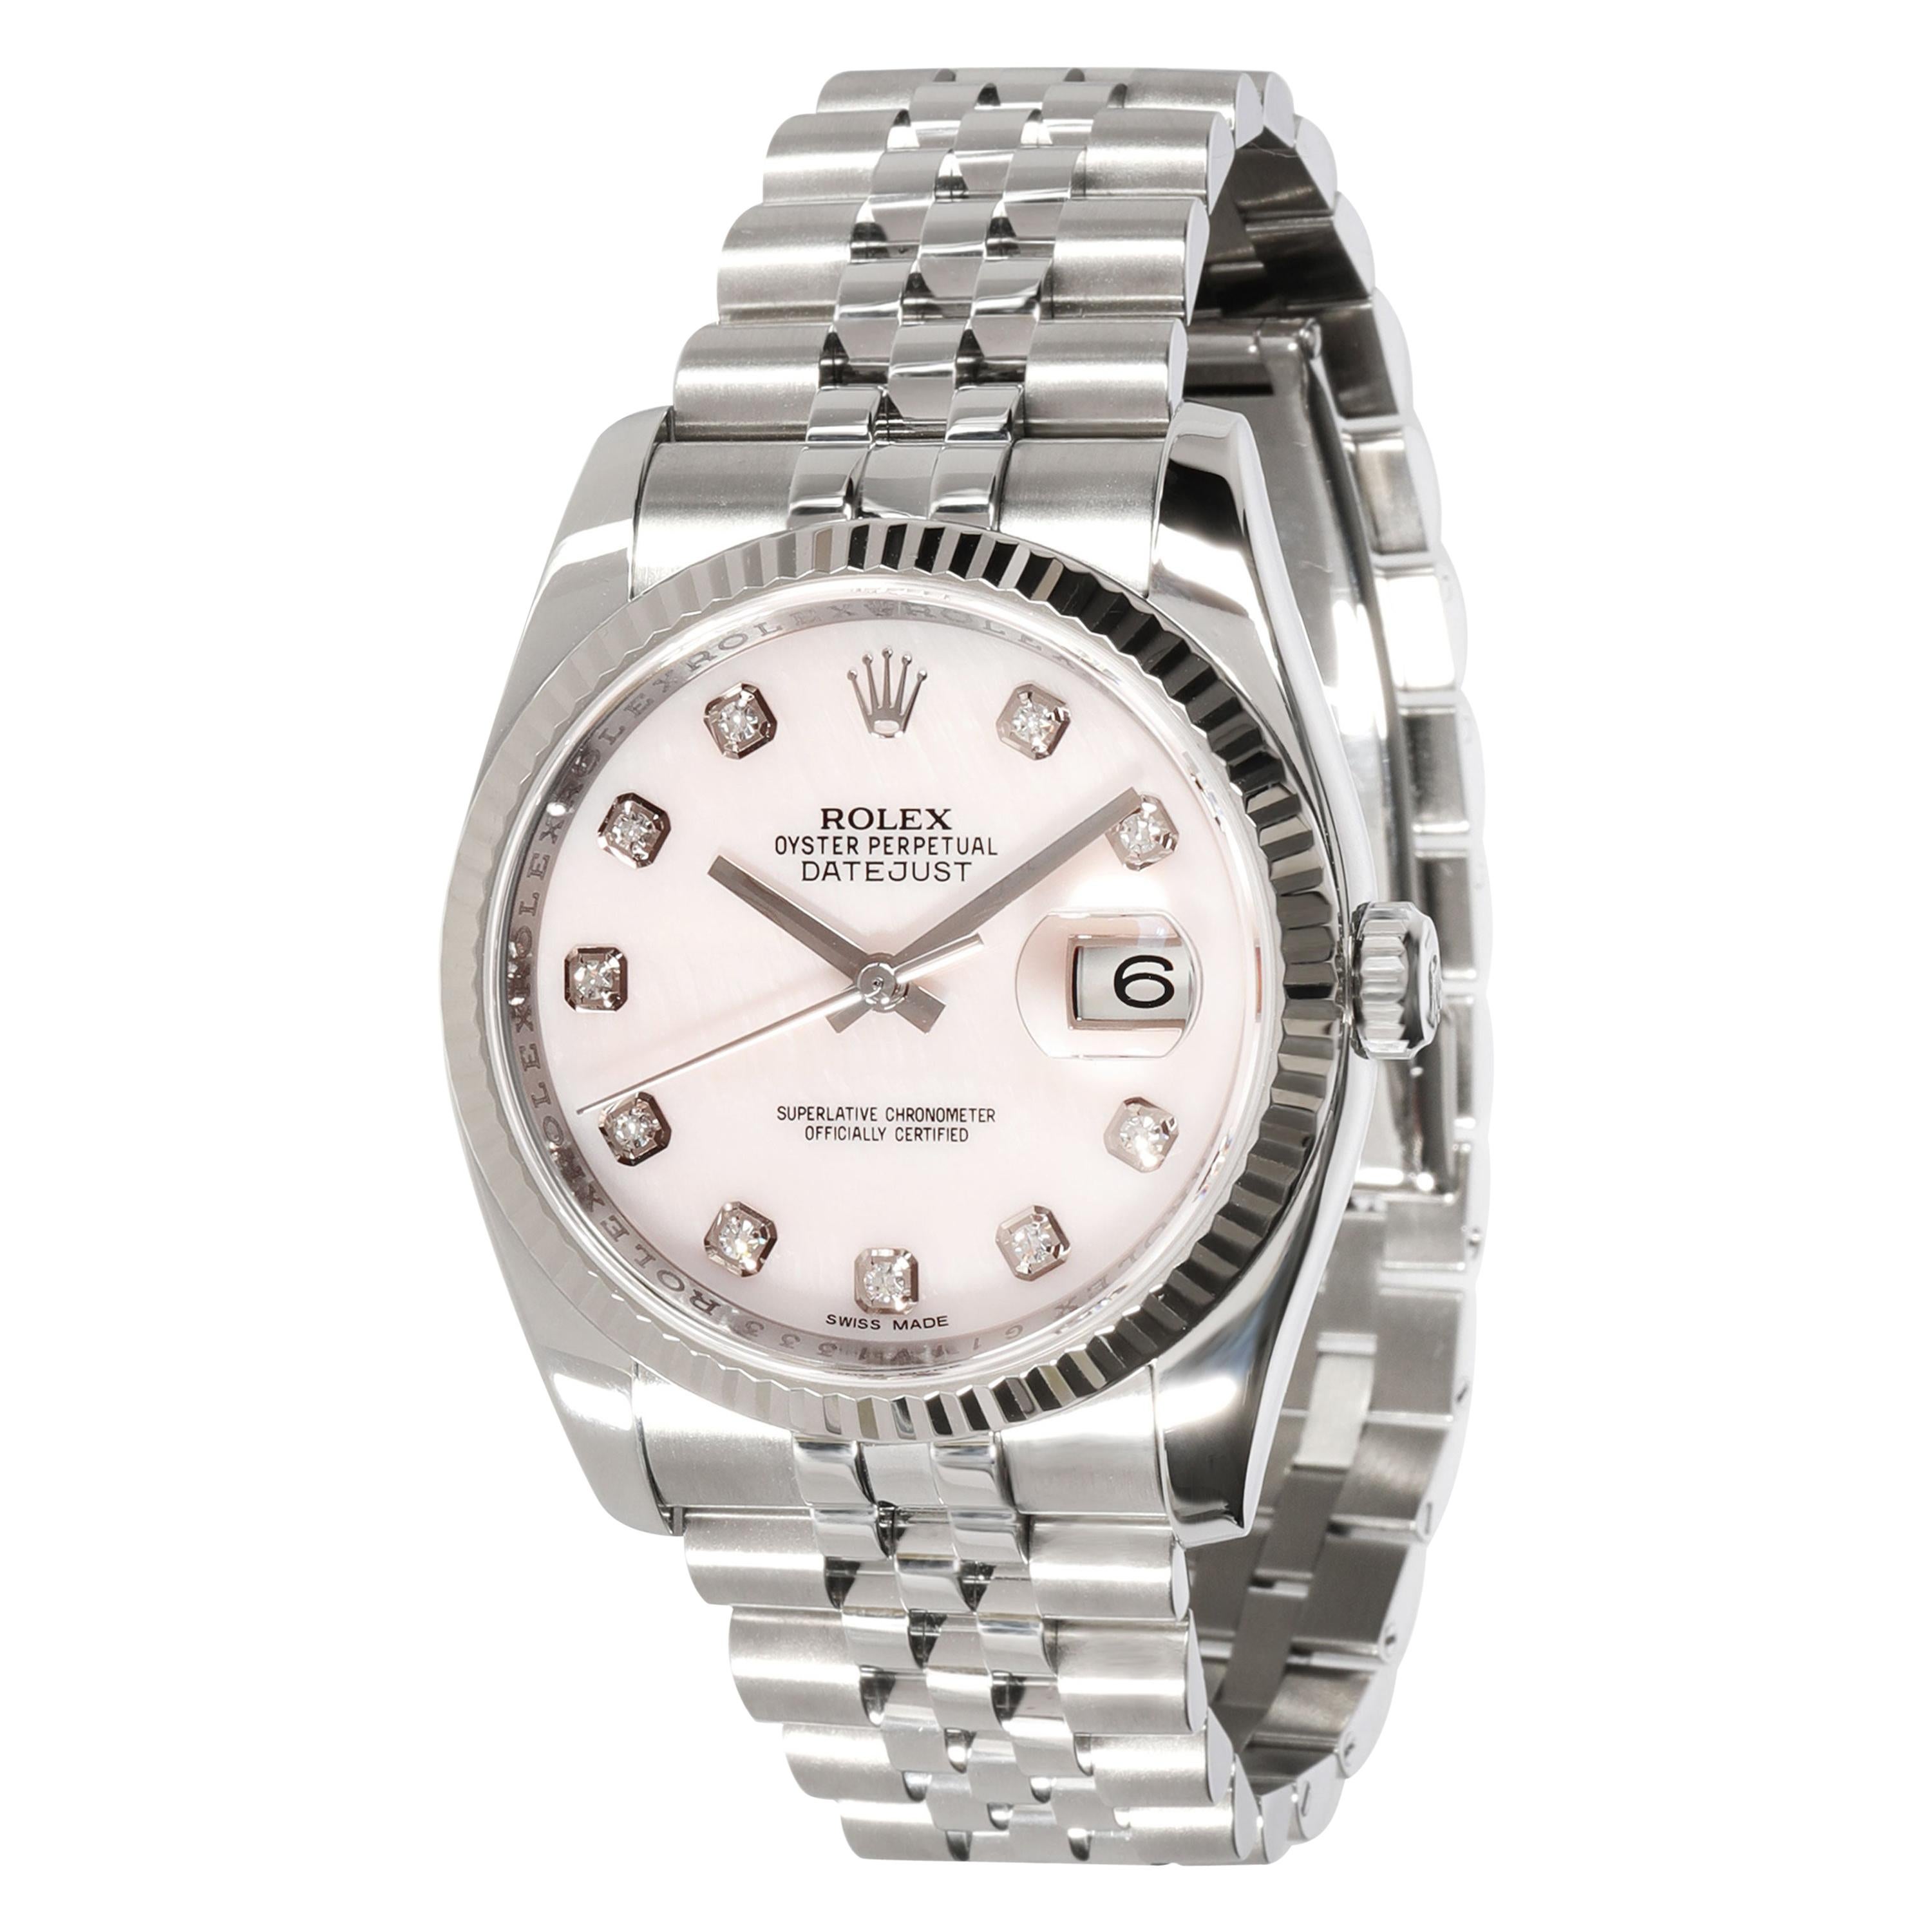 Rolex Datejust 116234 Men's Watch in 18 Karat Stainless Steel/White Gold